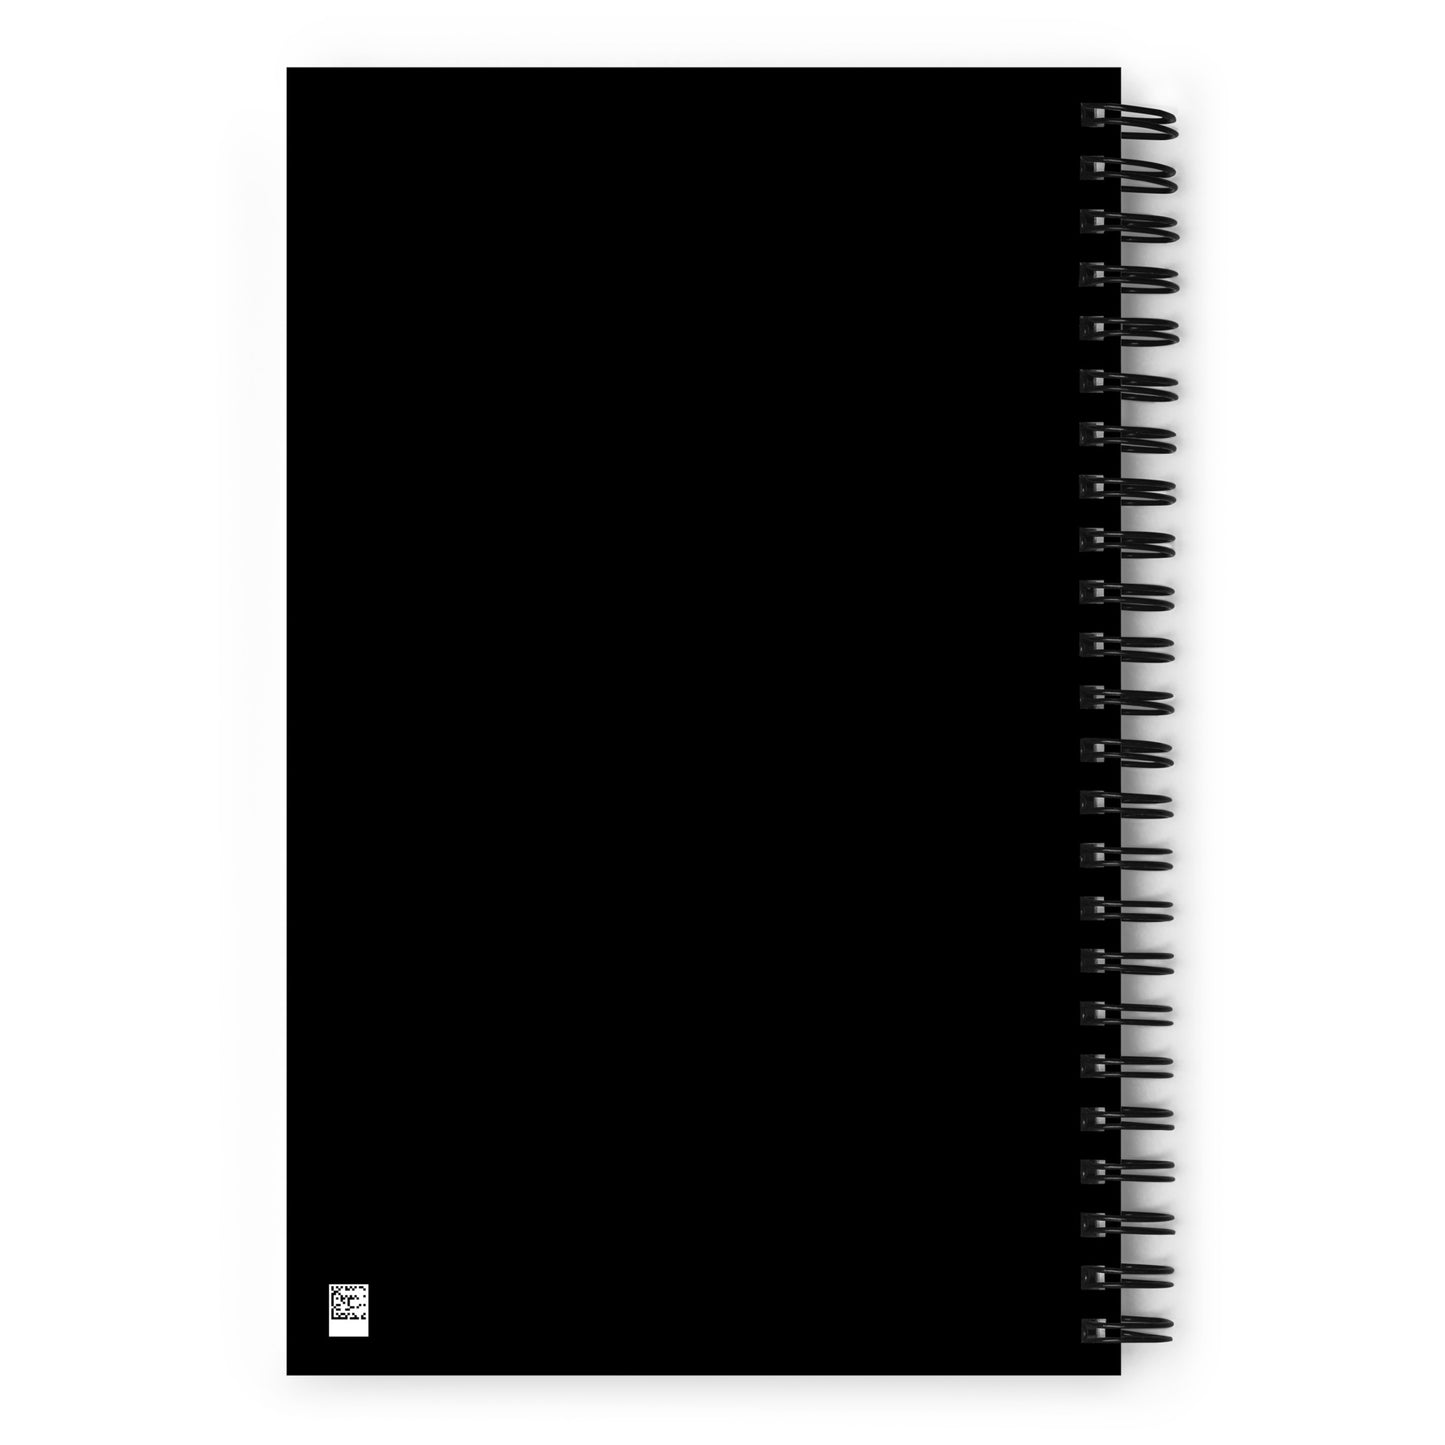 Unique Travel Gift Spiral Notebook - White Oval • BNA Nashville • YHM Designs - Image 02